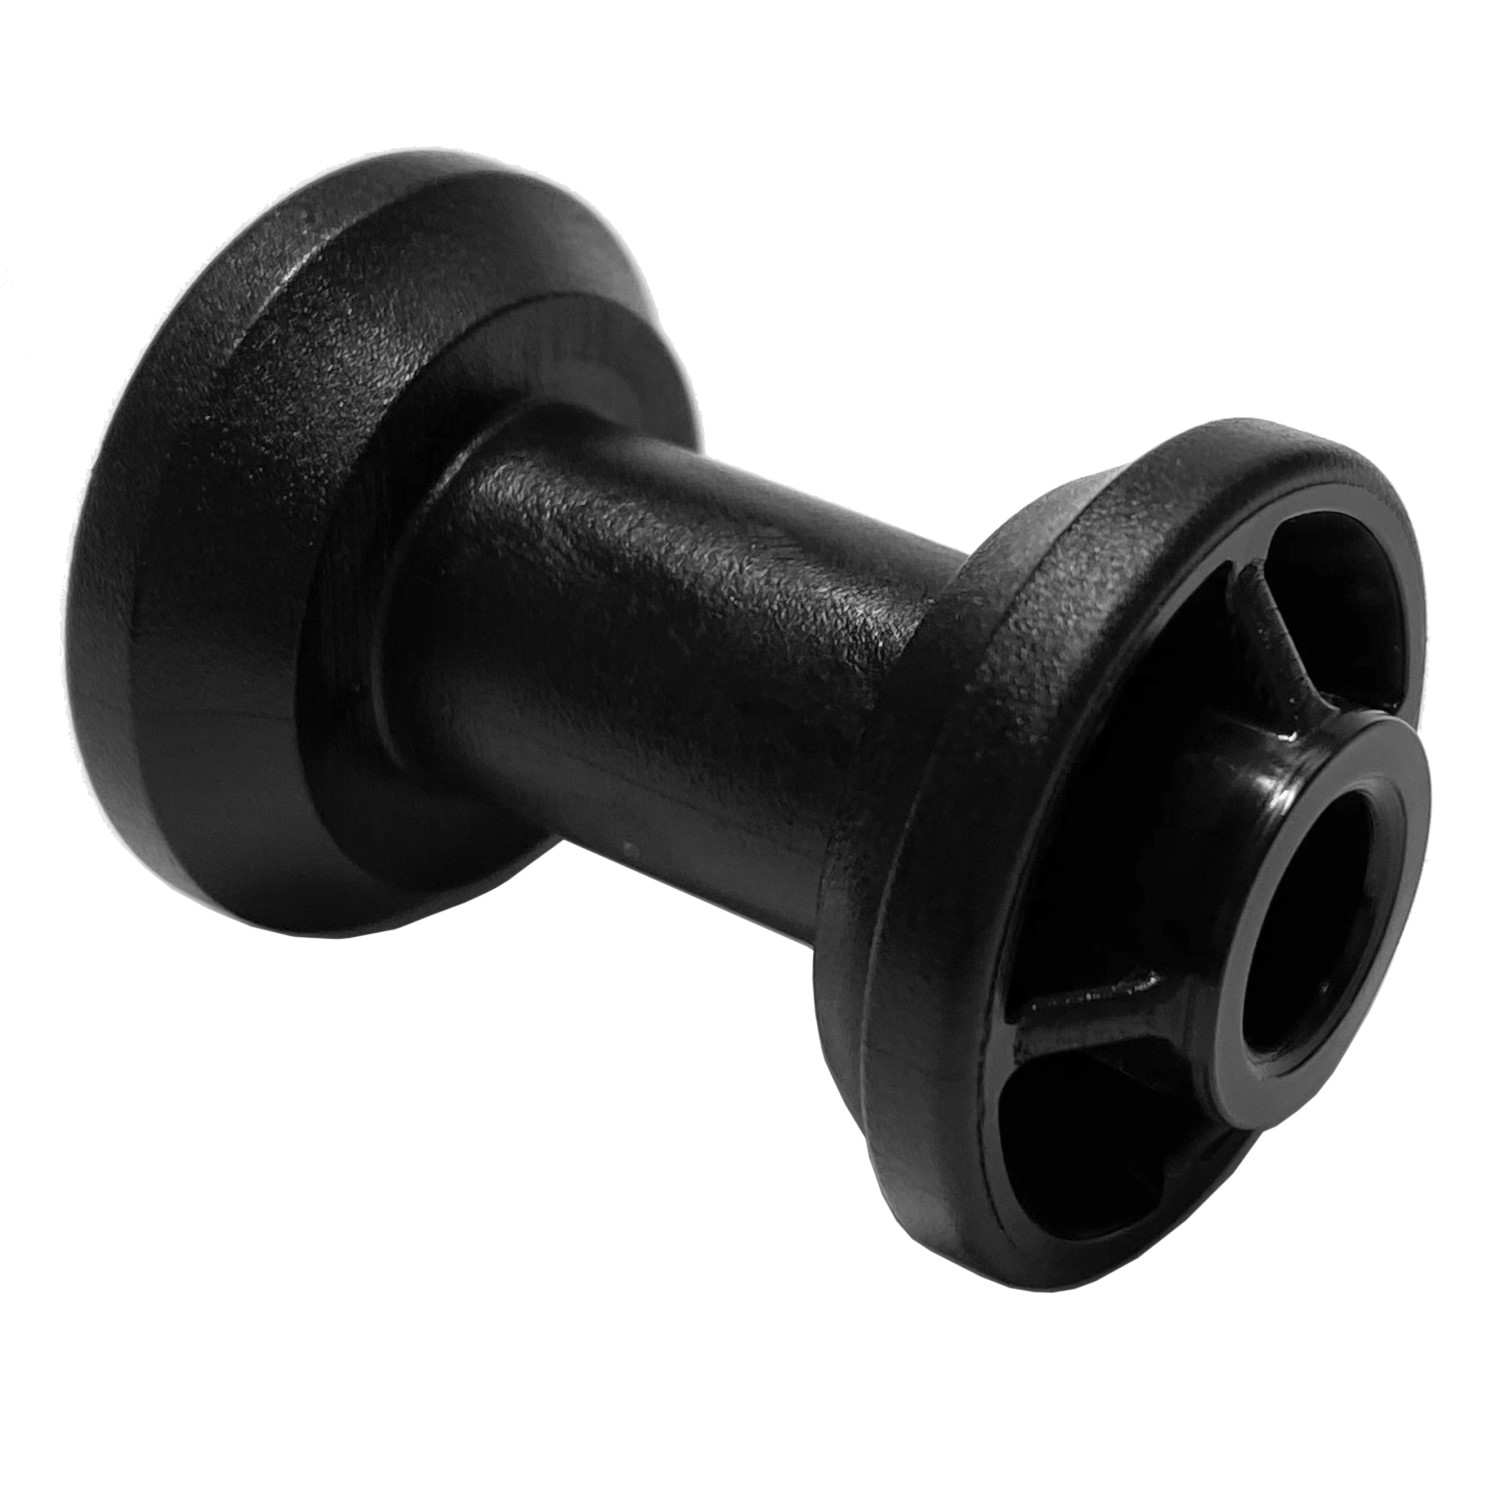 Diabolorolle für 42 mm Rohr - Farbe: schwarz